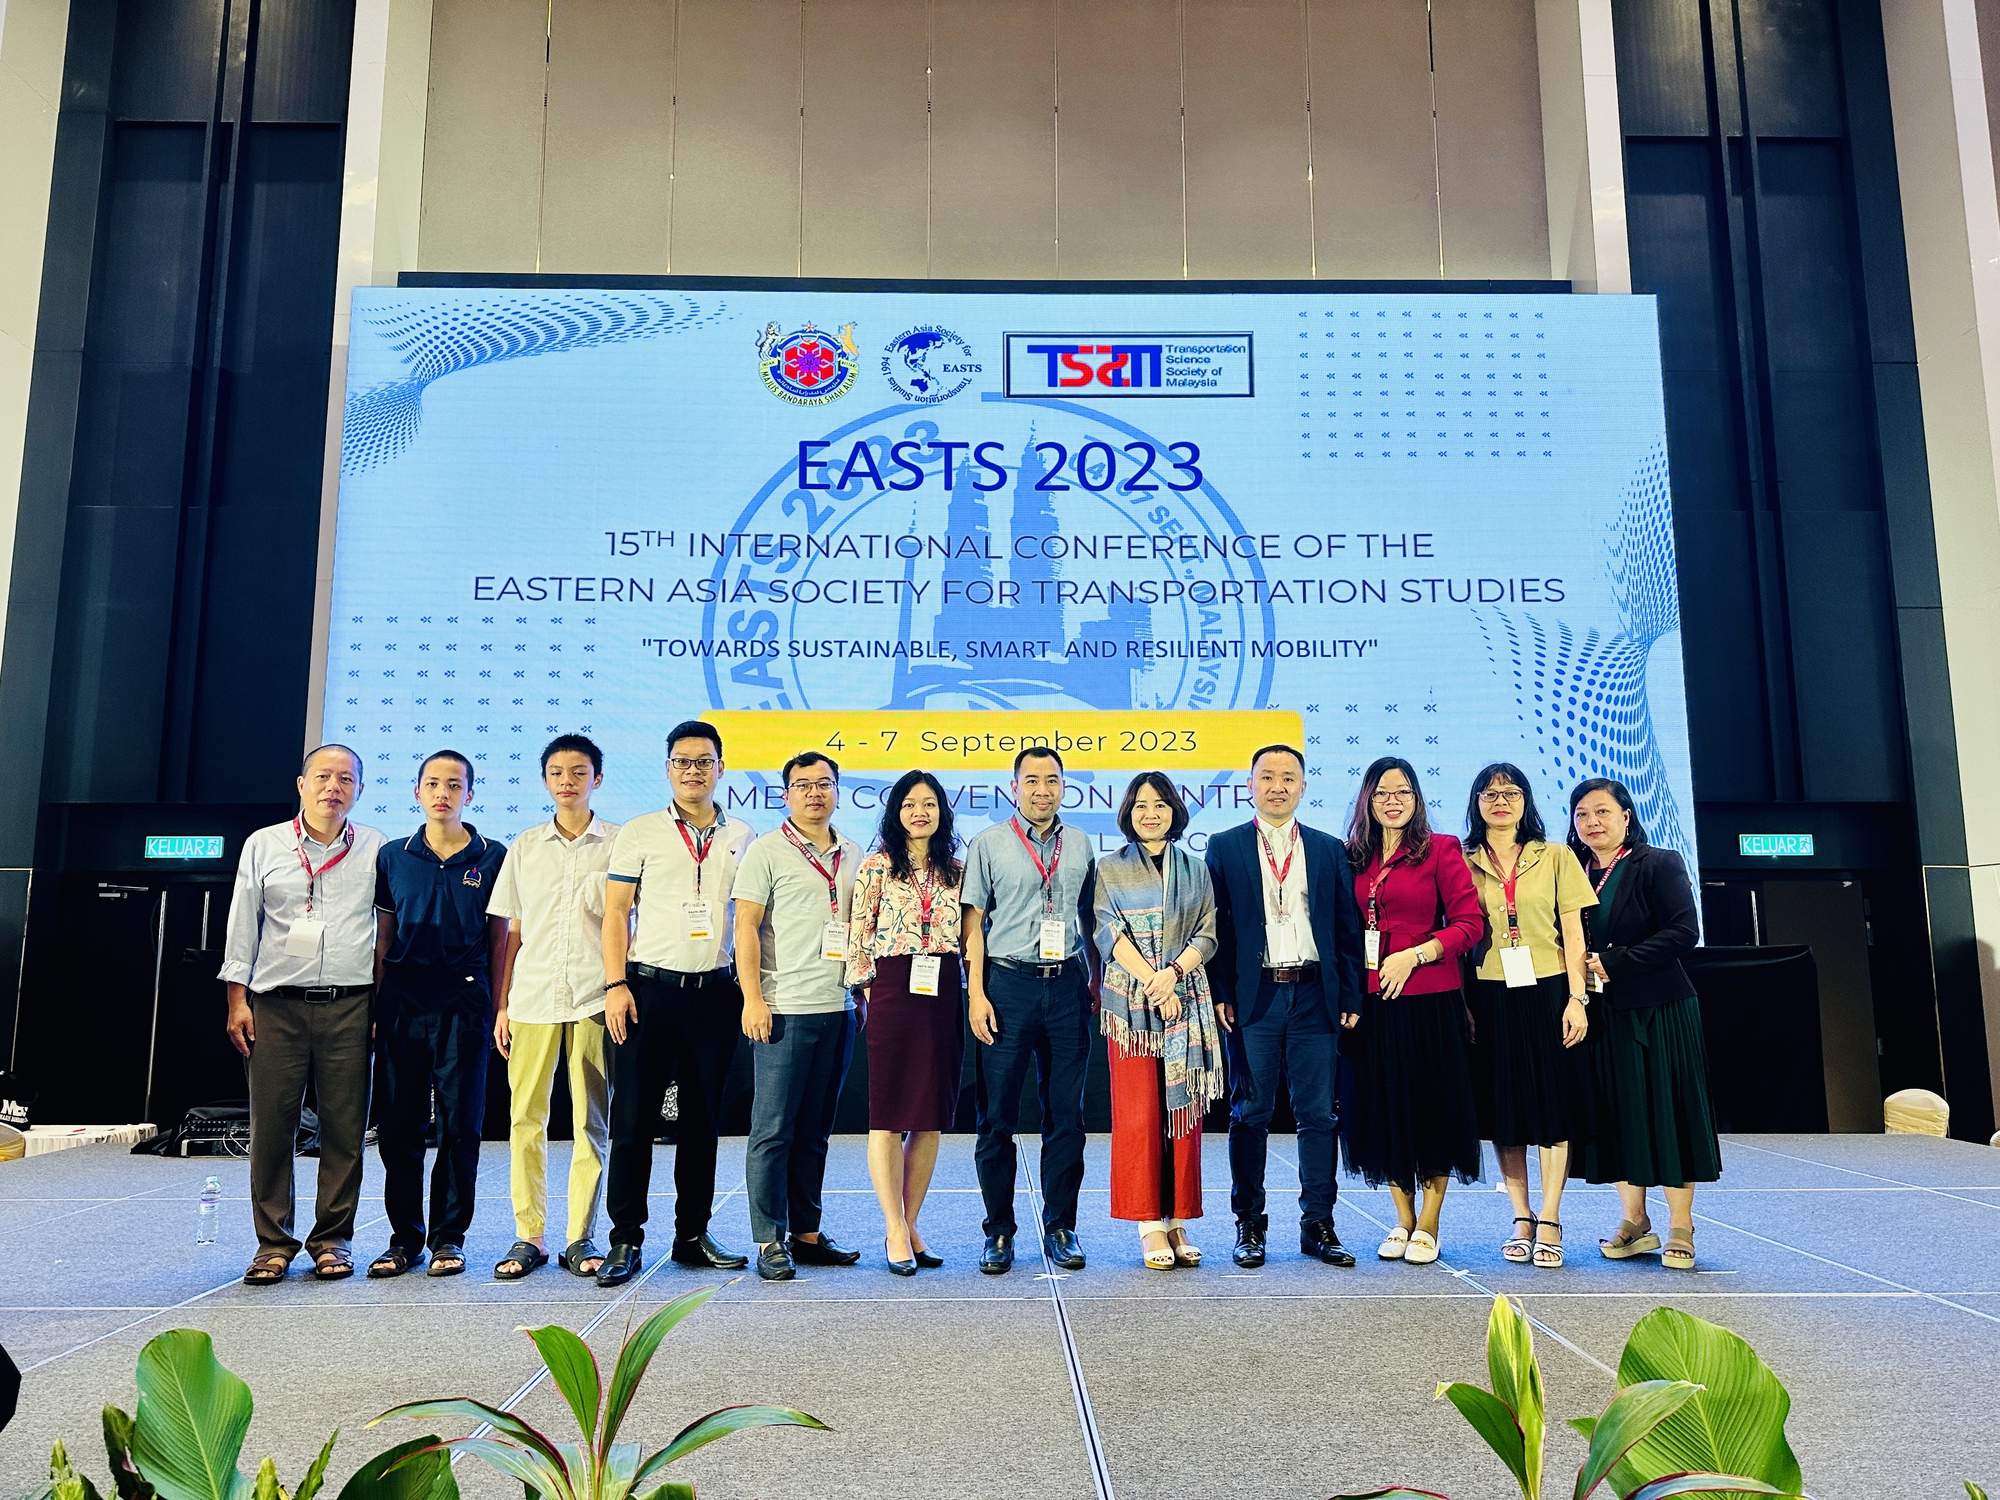 Khai mạc Hội nghị nghiên cứu giao thông Đông Á (EASTS 2023) lần thứ 15 - Ảnh 2.